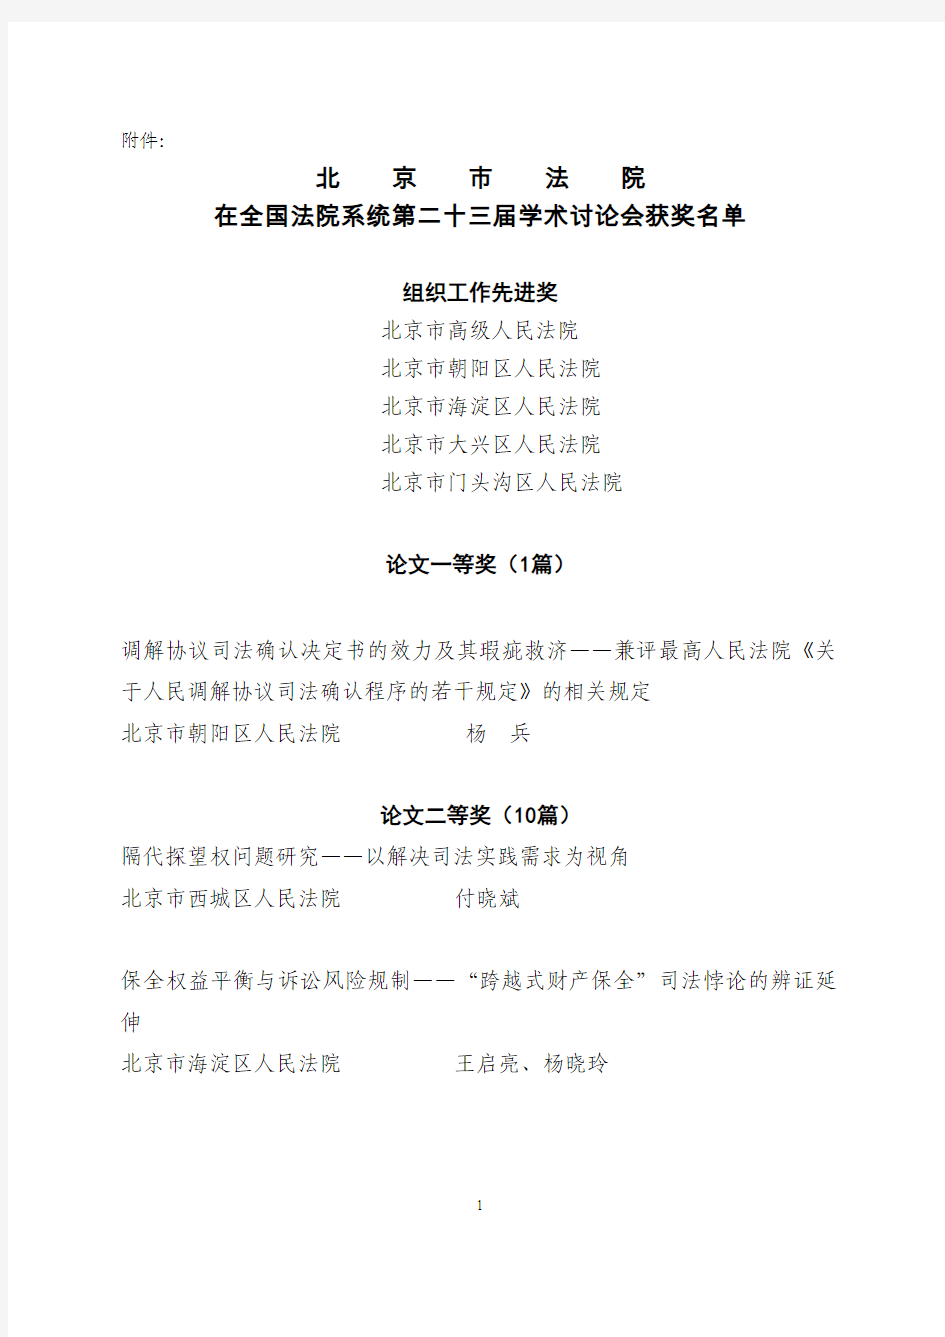 北京法院获奖名单